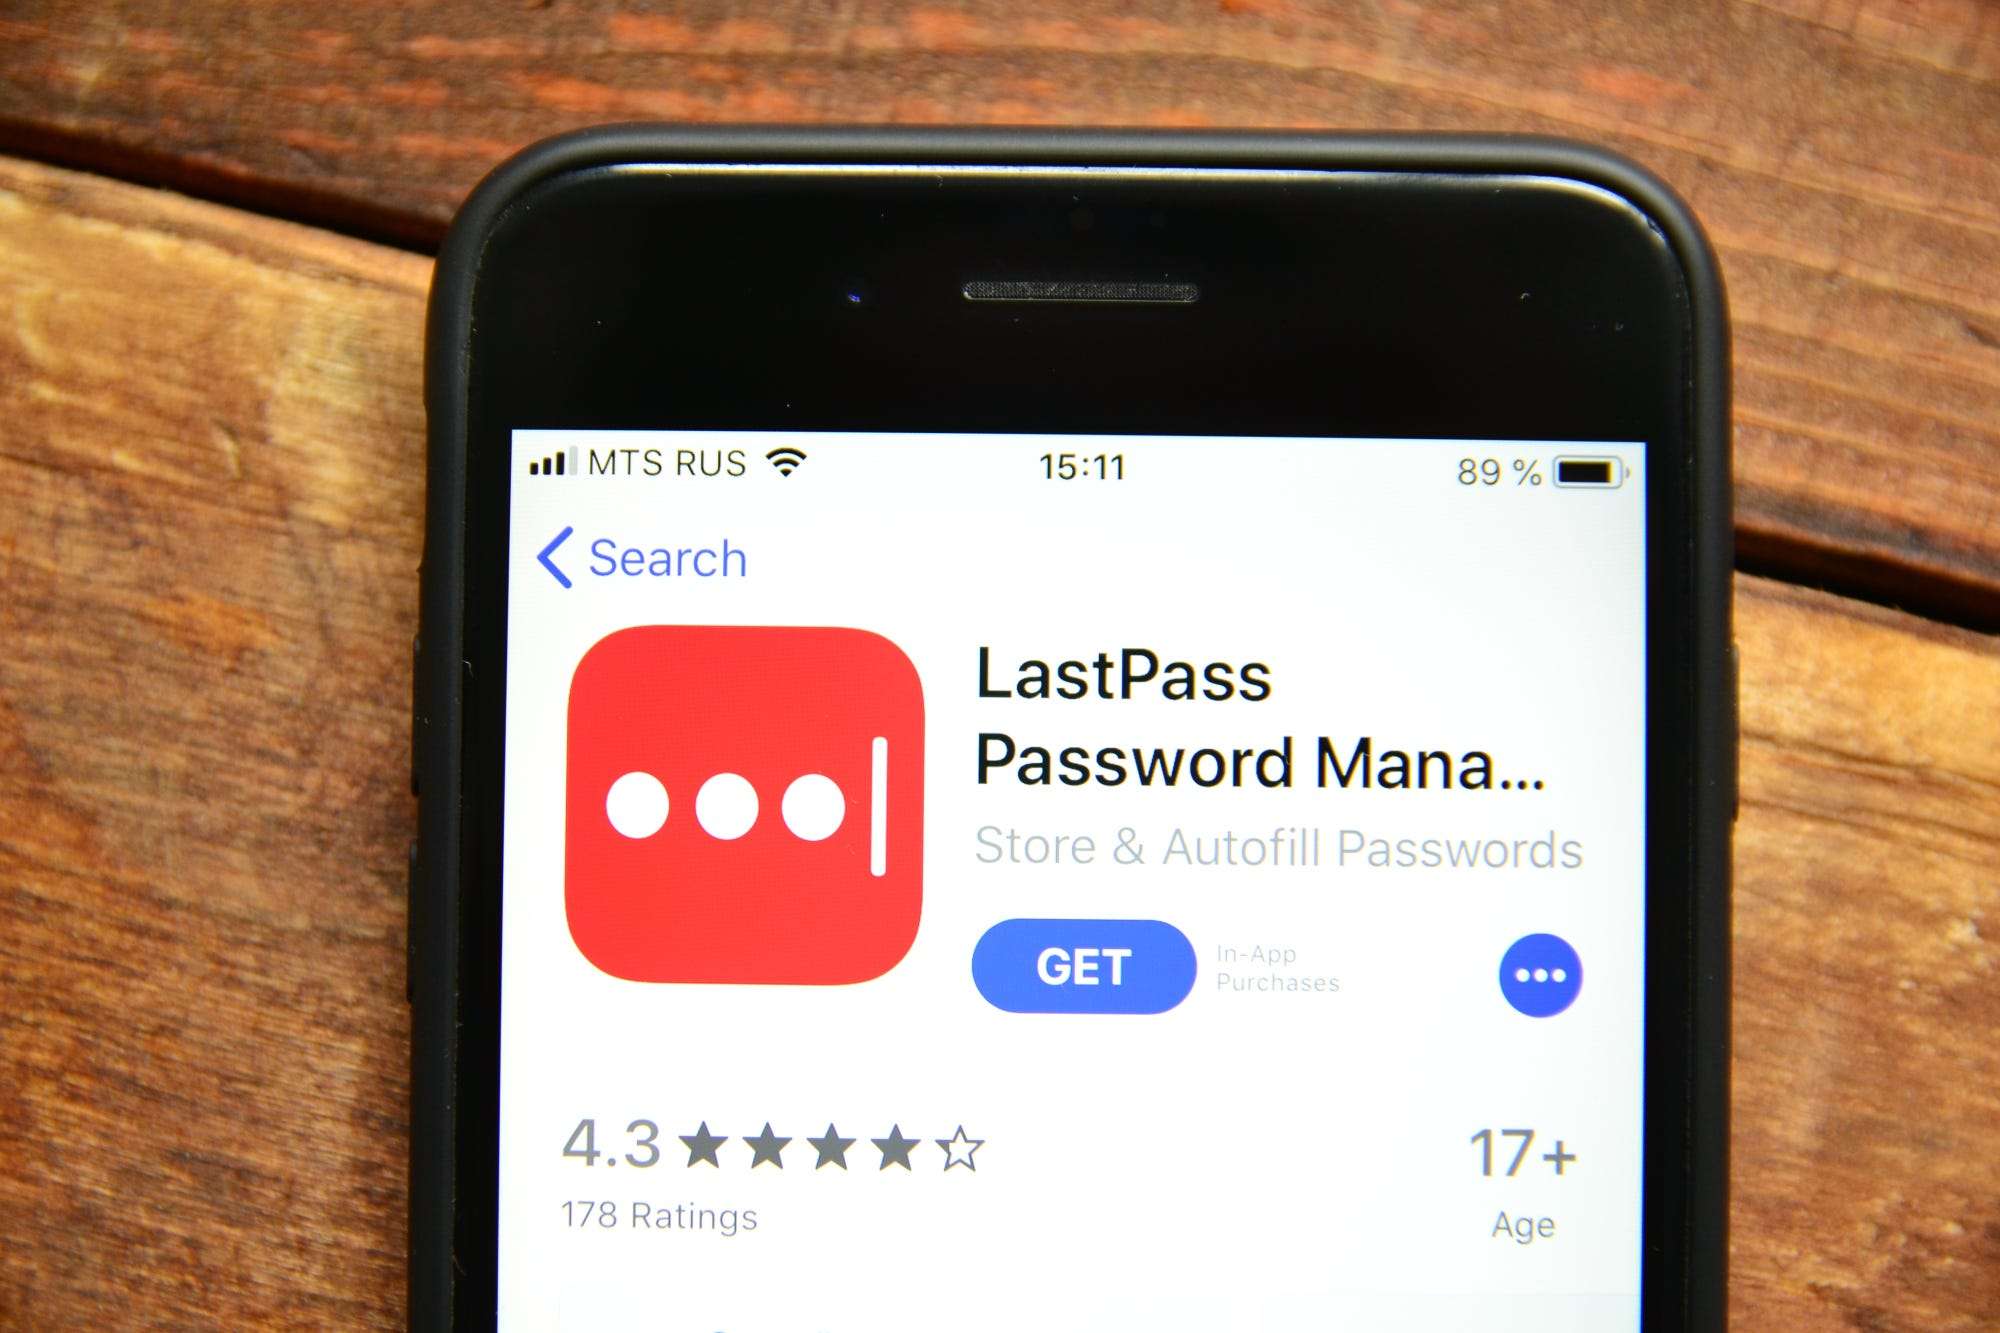 lastpass password gen